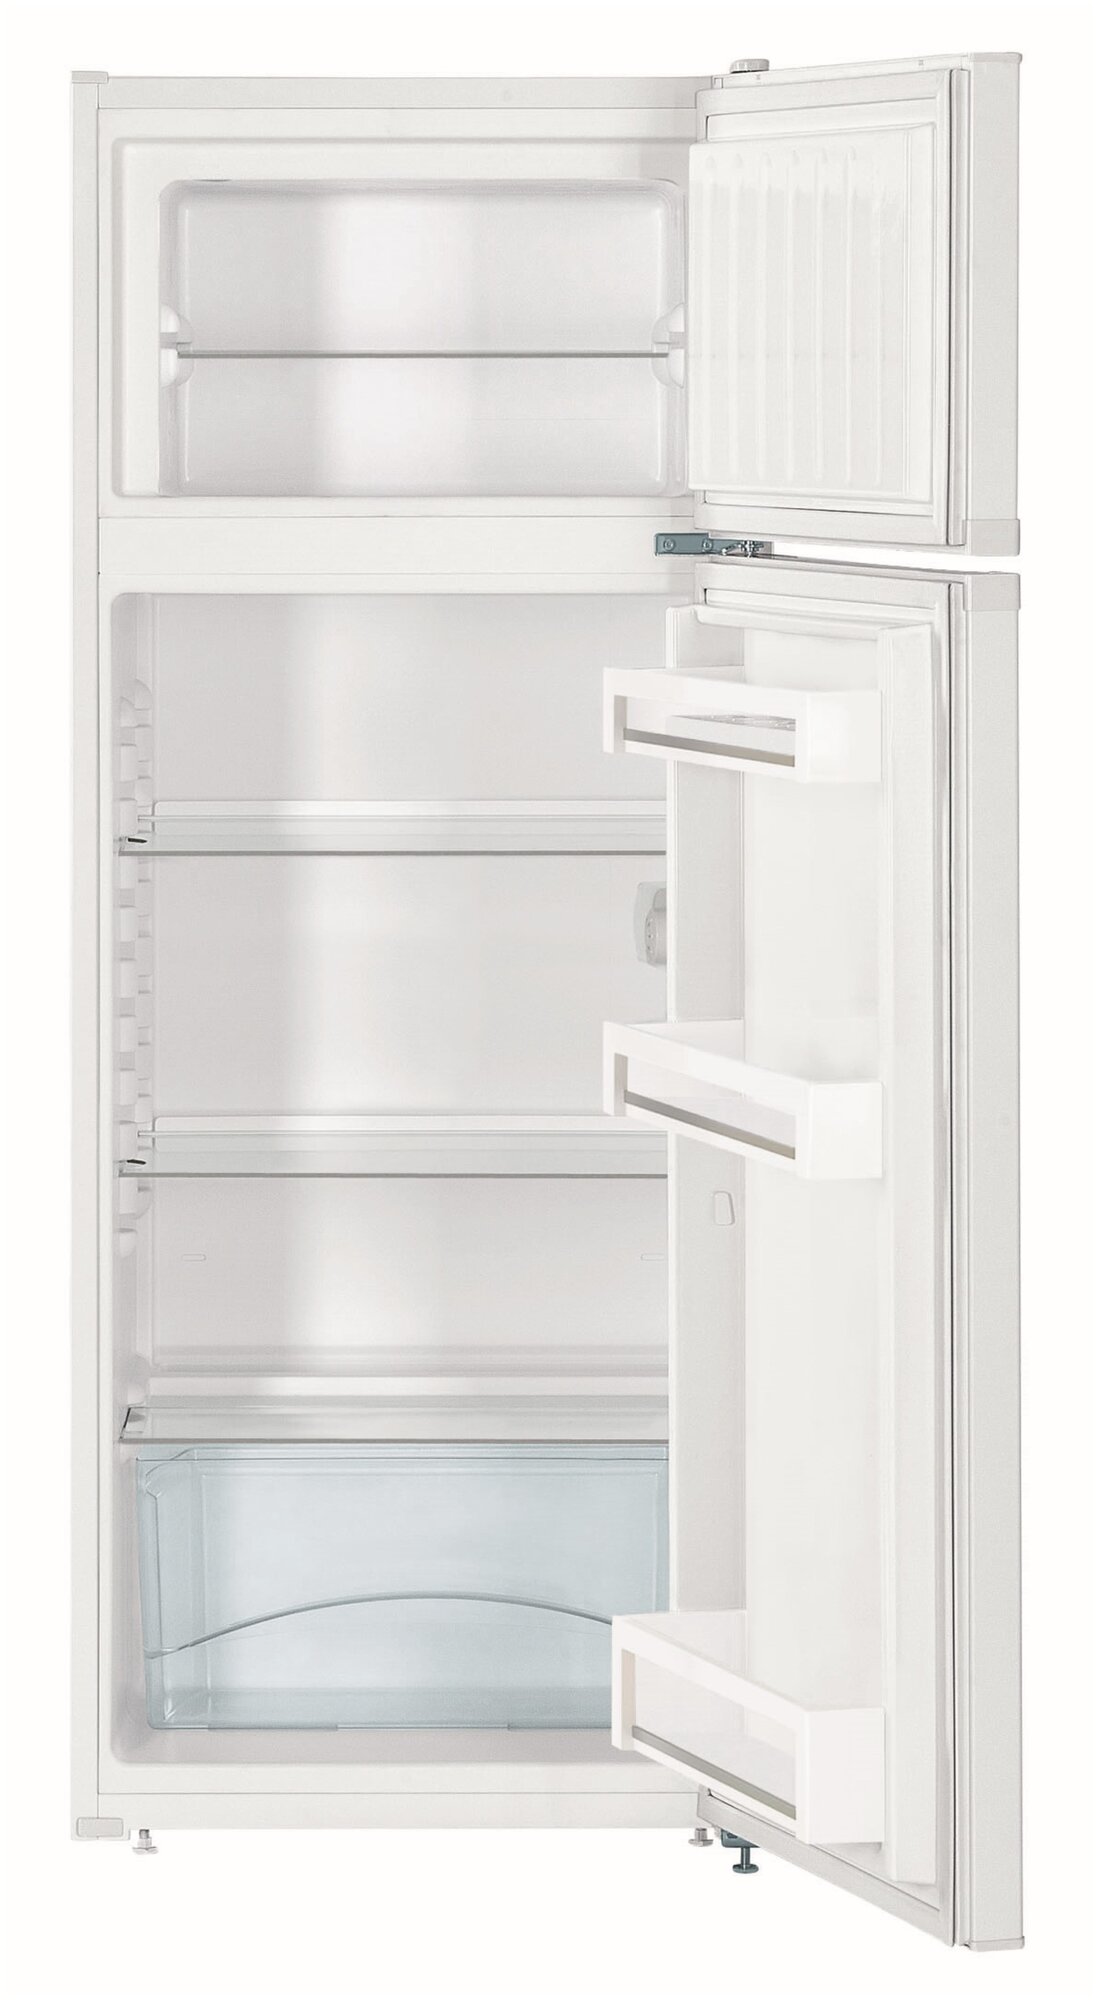 Холодильник Liebherr - фото №2